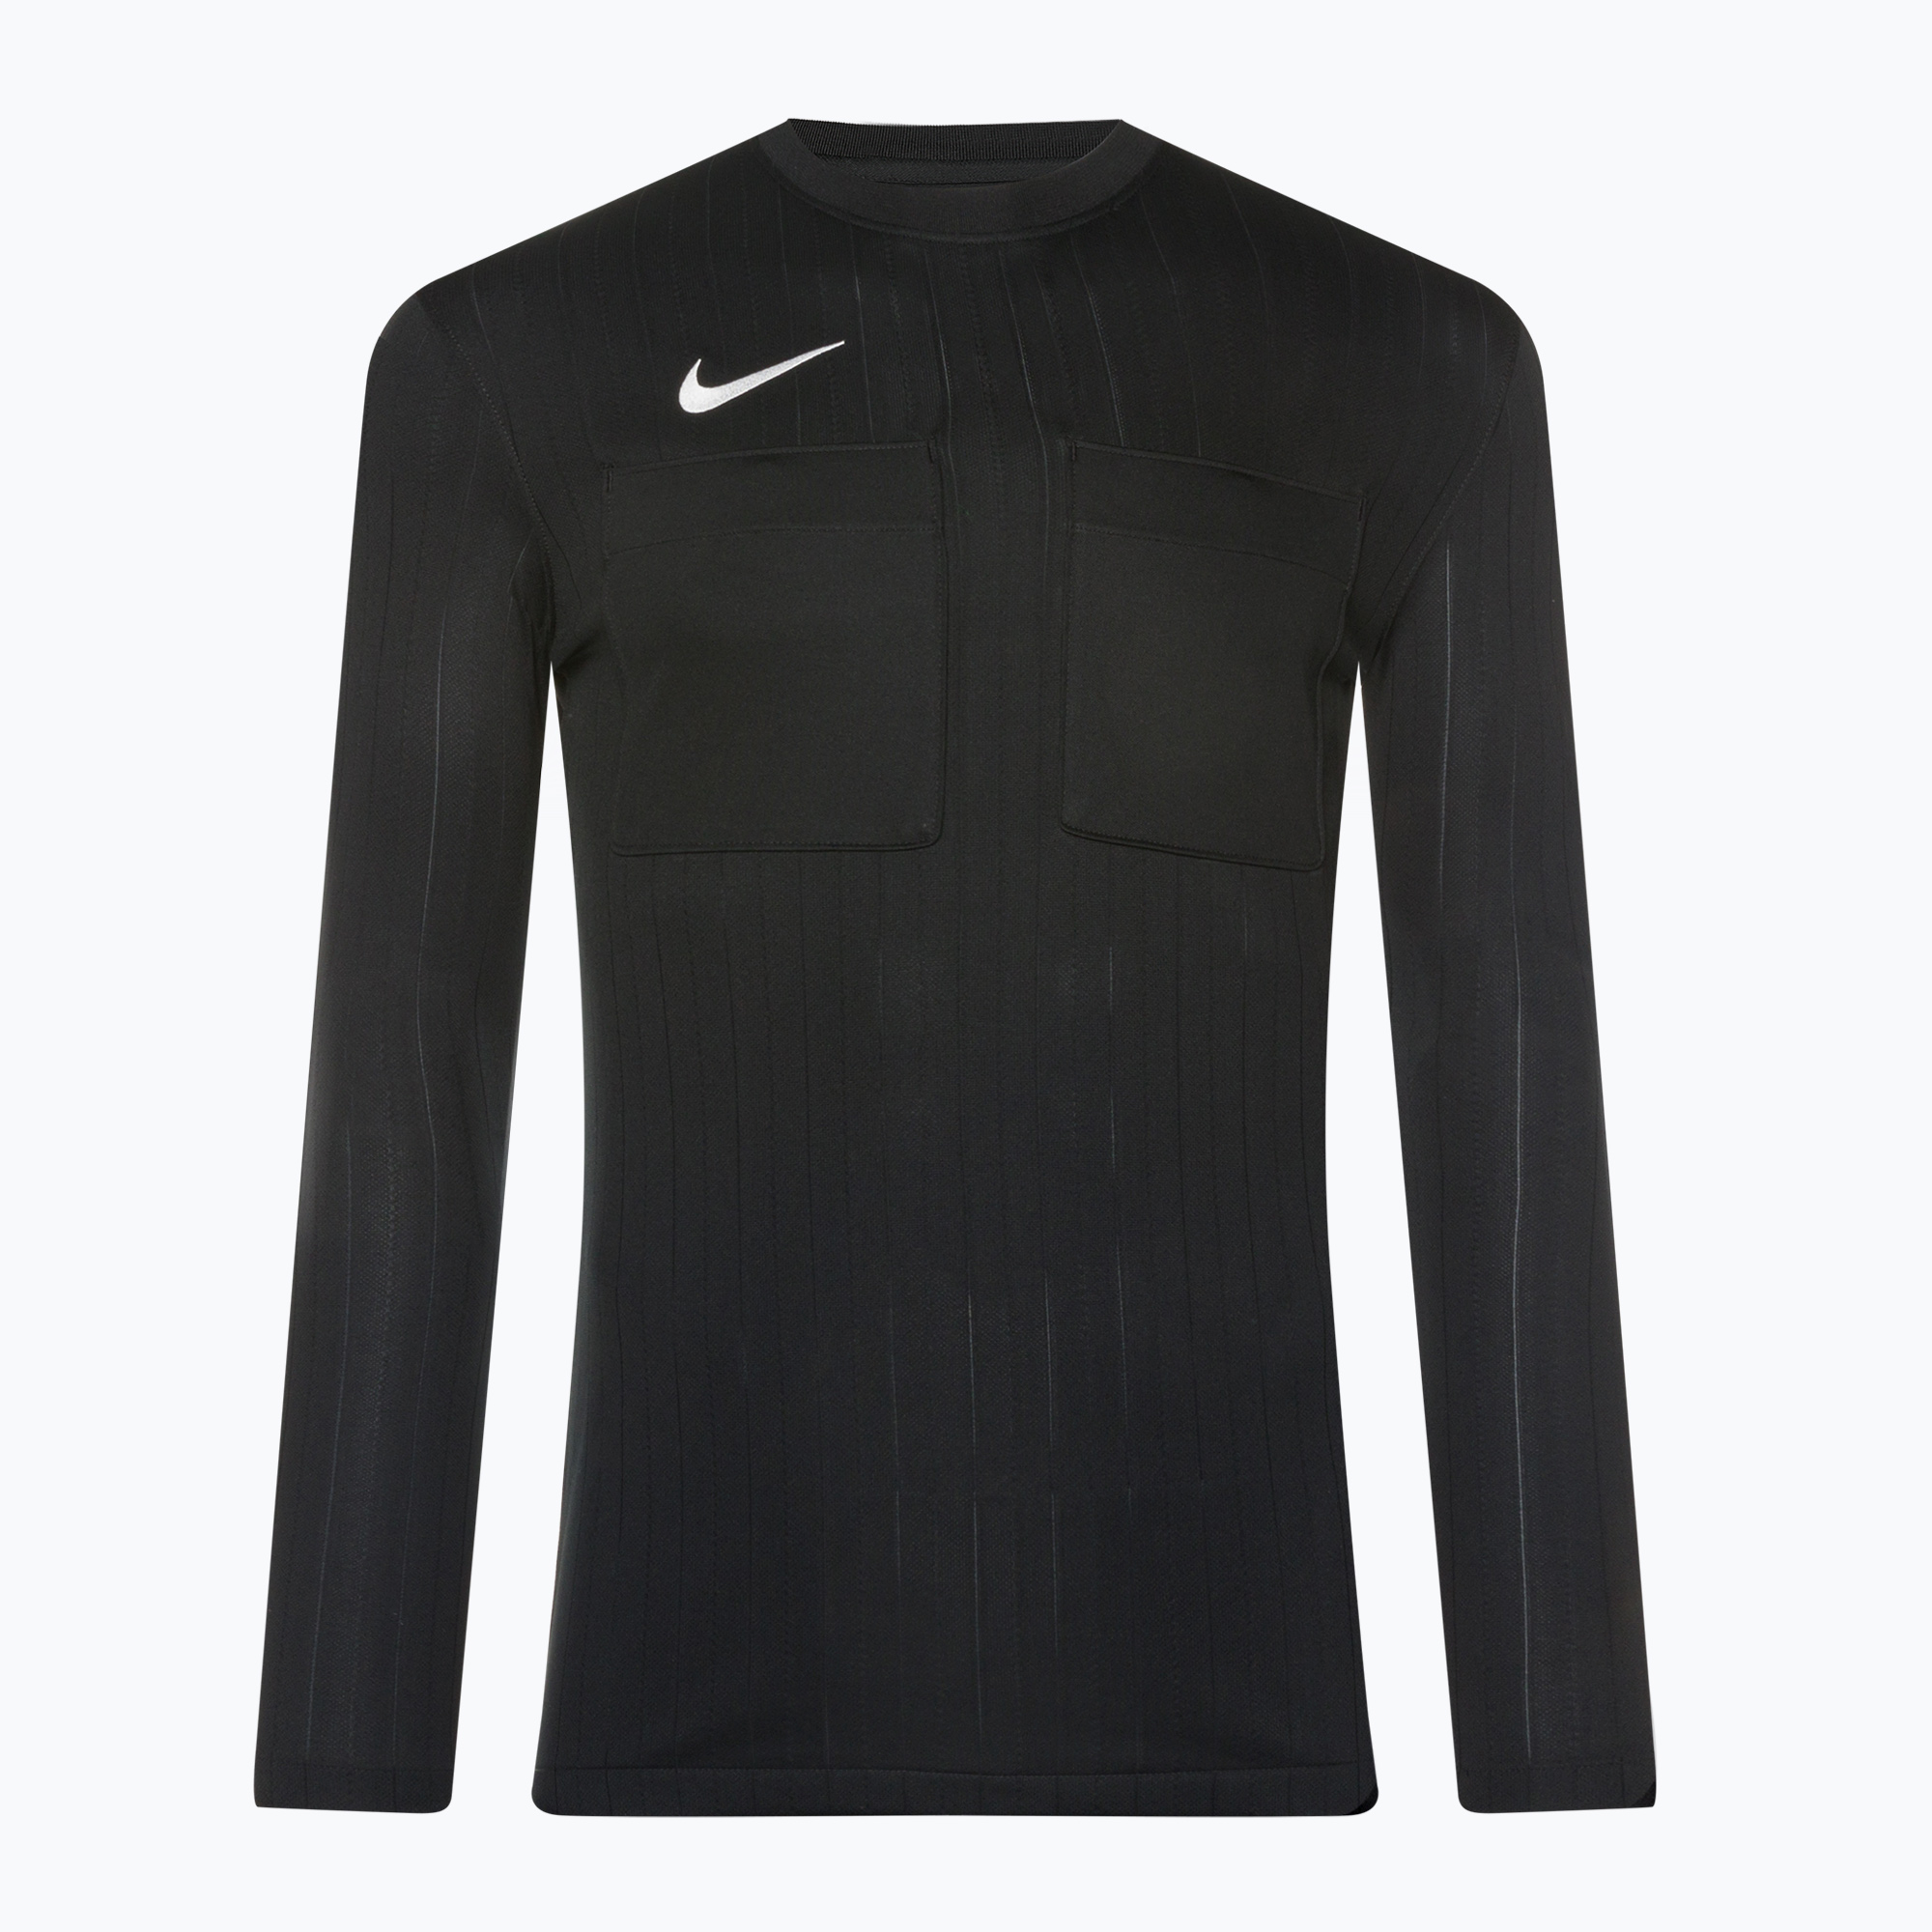 Pánske futbalové tričko s dlhým rukávom Nike Dri-FIT Referee II black/white